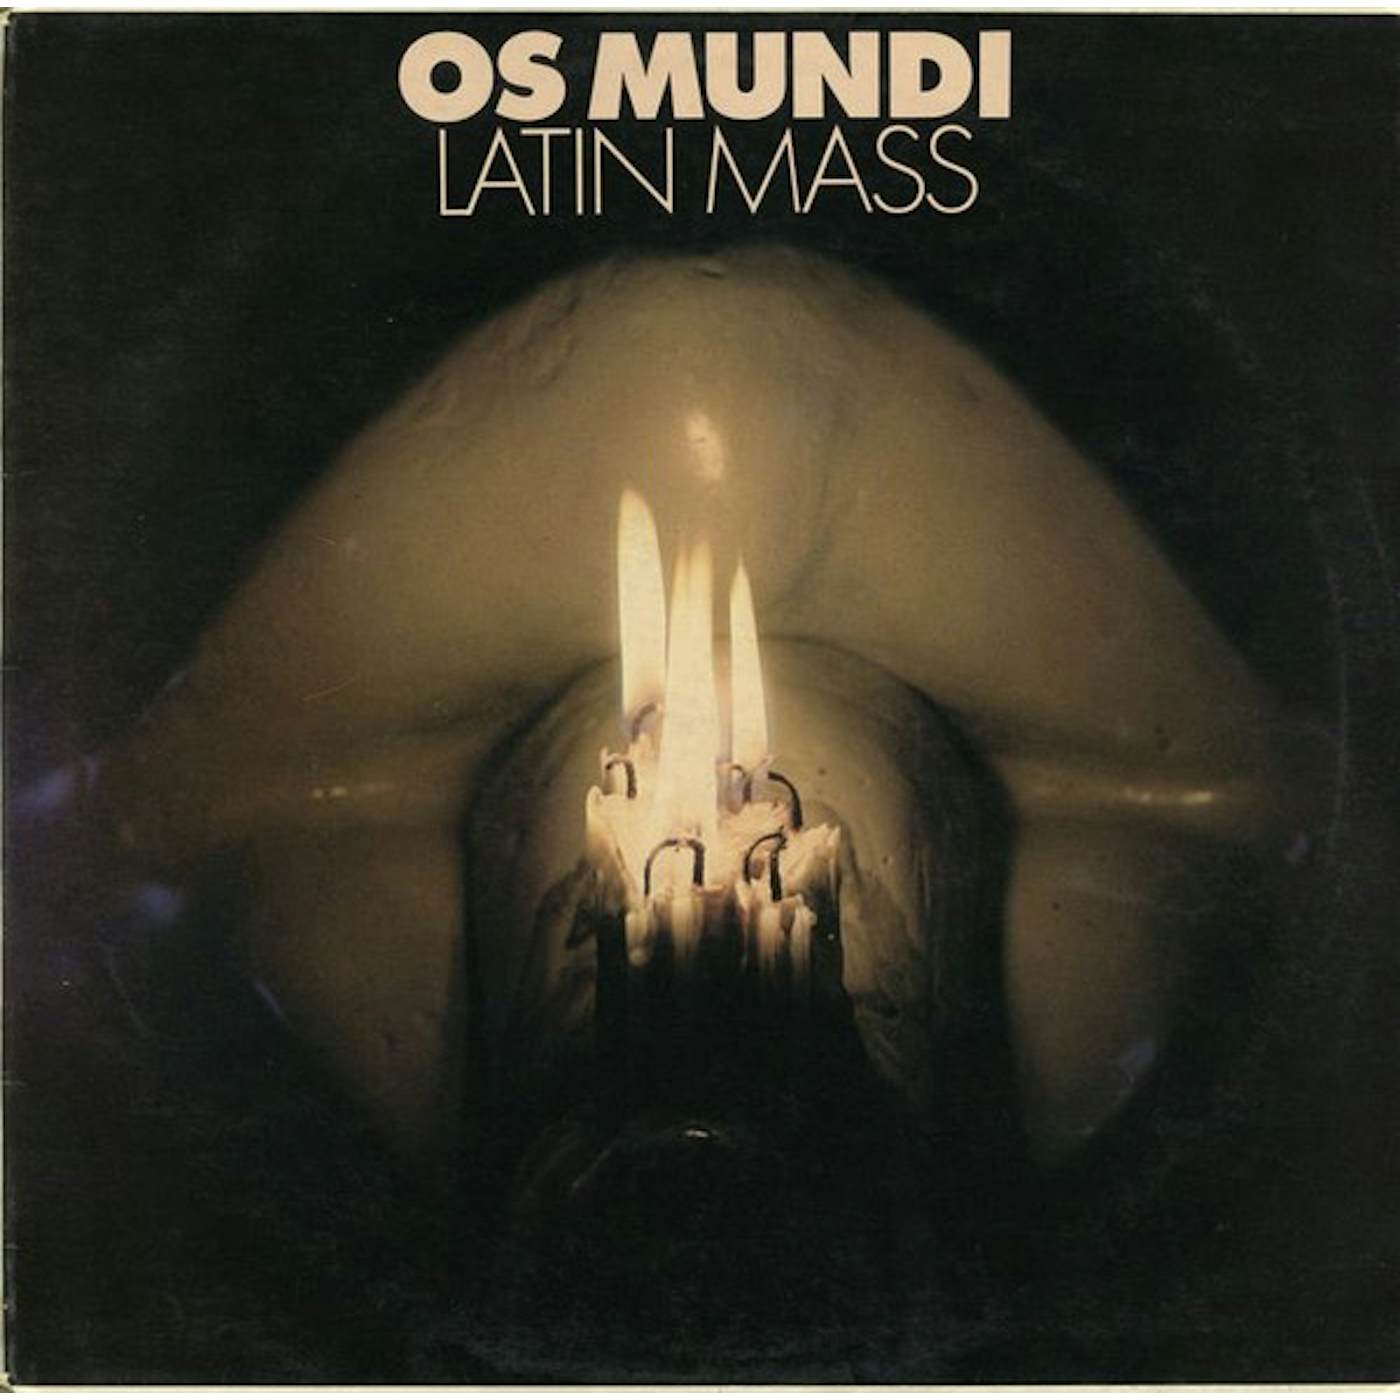 Os Mundi Latin Mass Vinyl Record